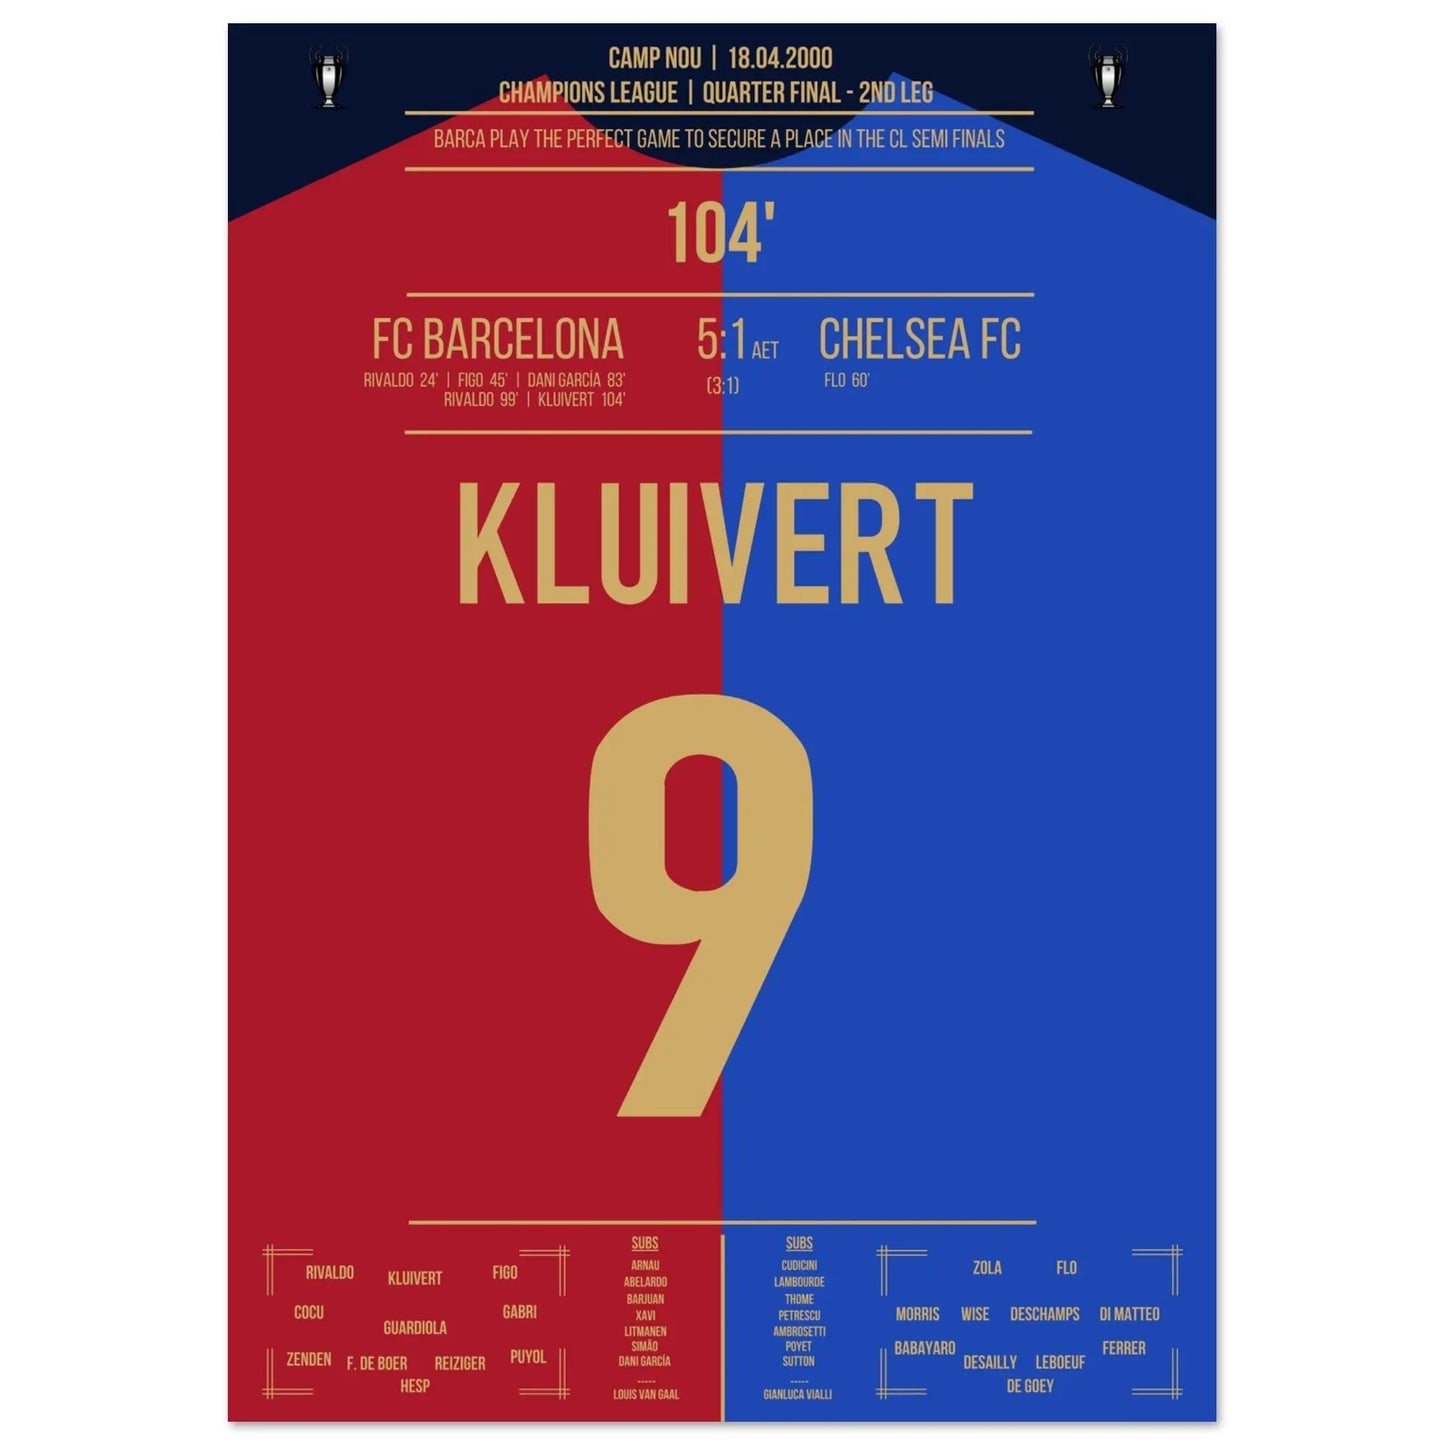 Le but de Kluivert lors de la "Remontada" du Barça contre Chelsea en 2000